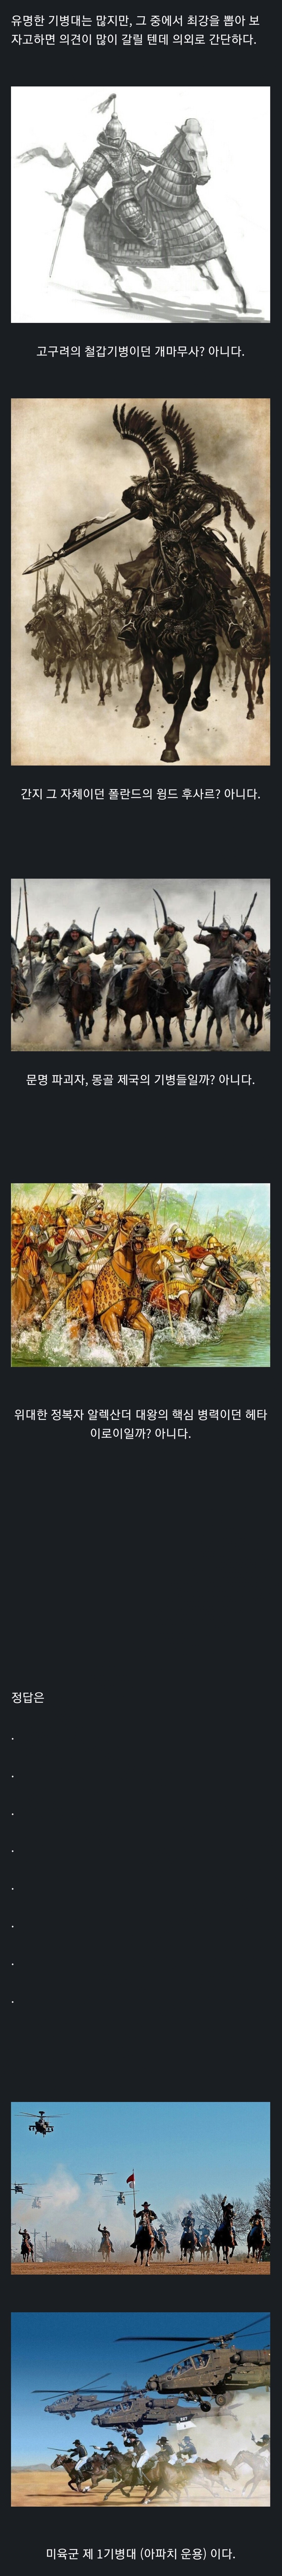 역사에서 제일쌘 기마병 종결.png